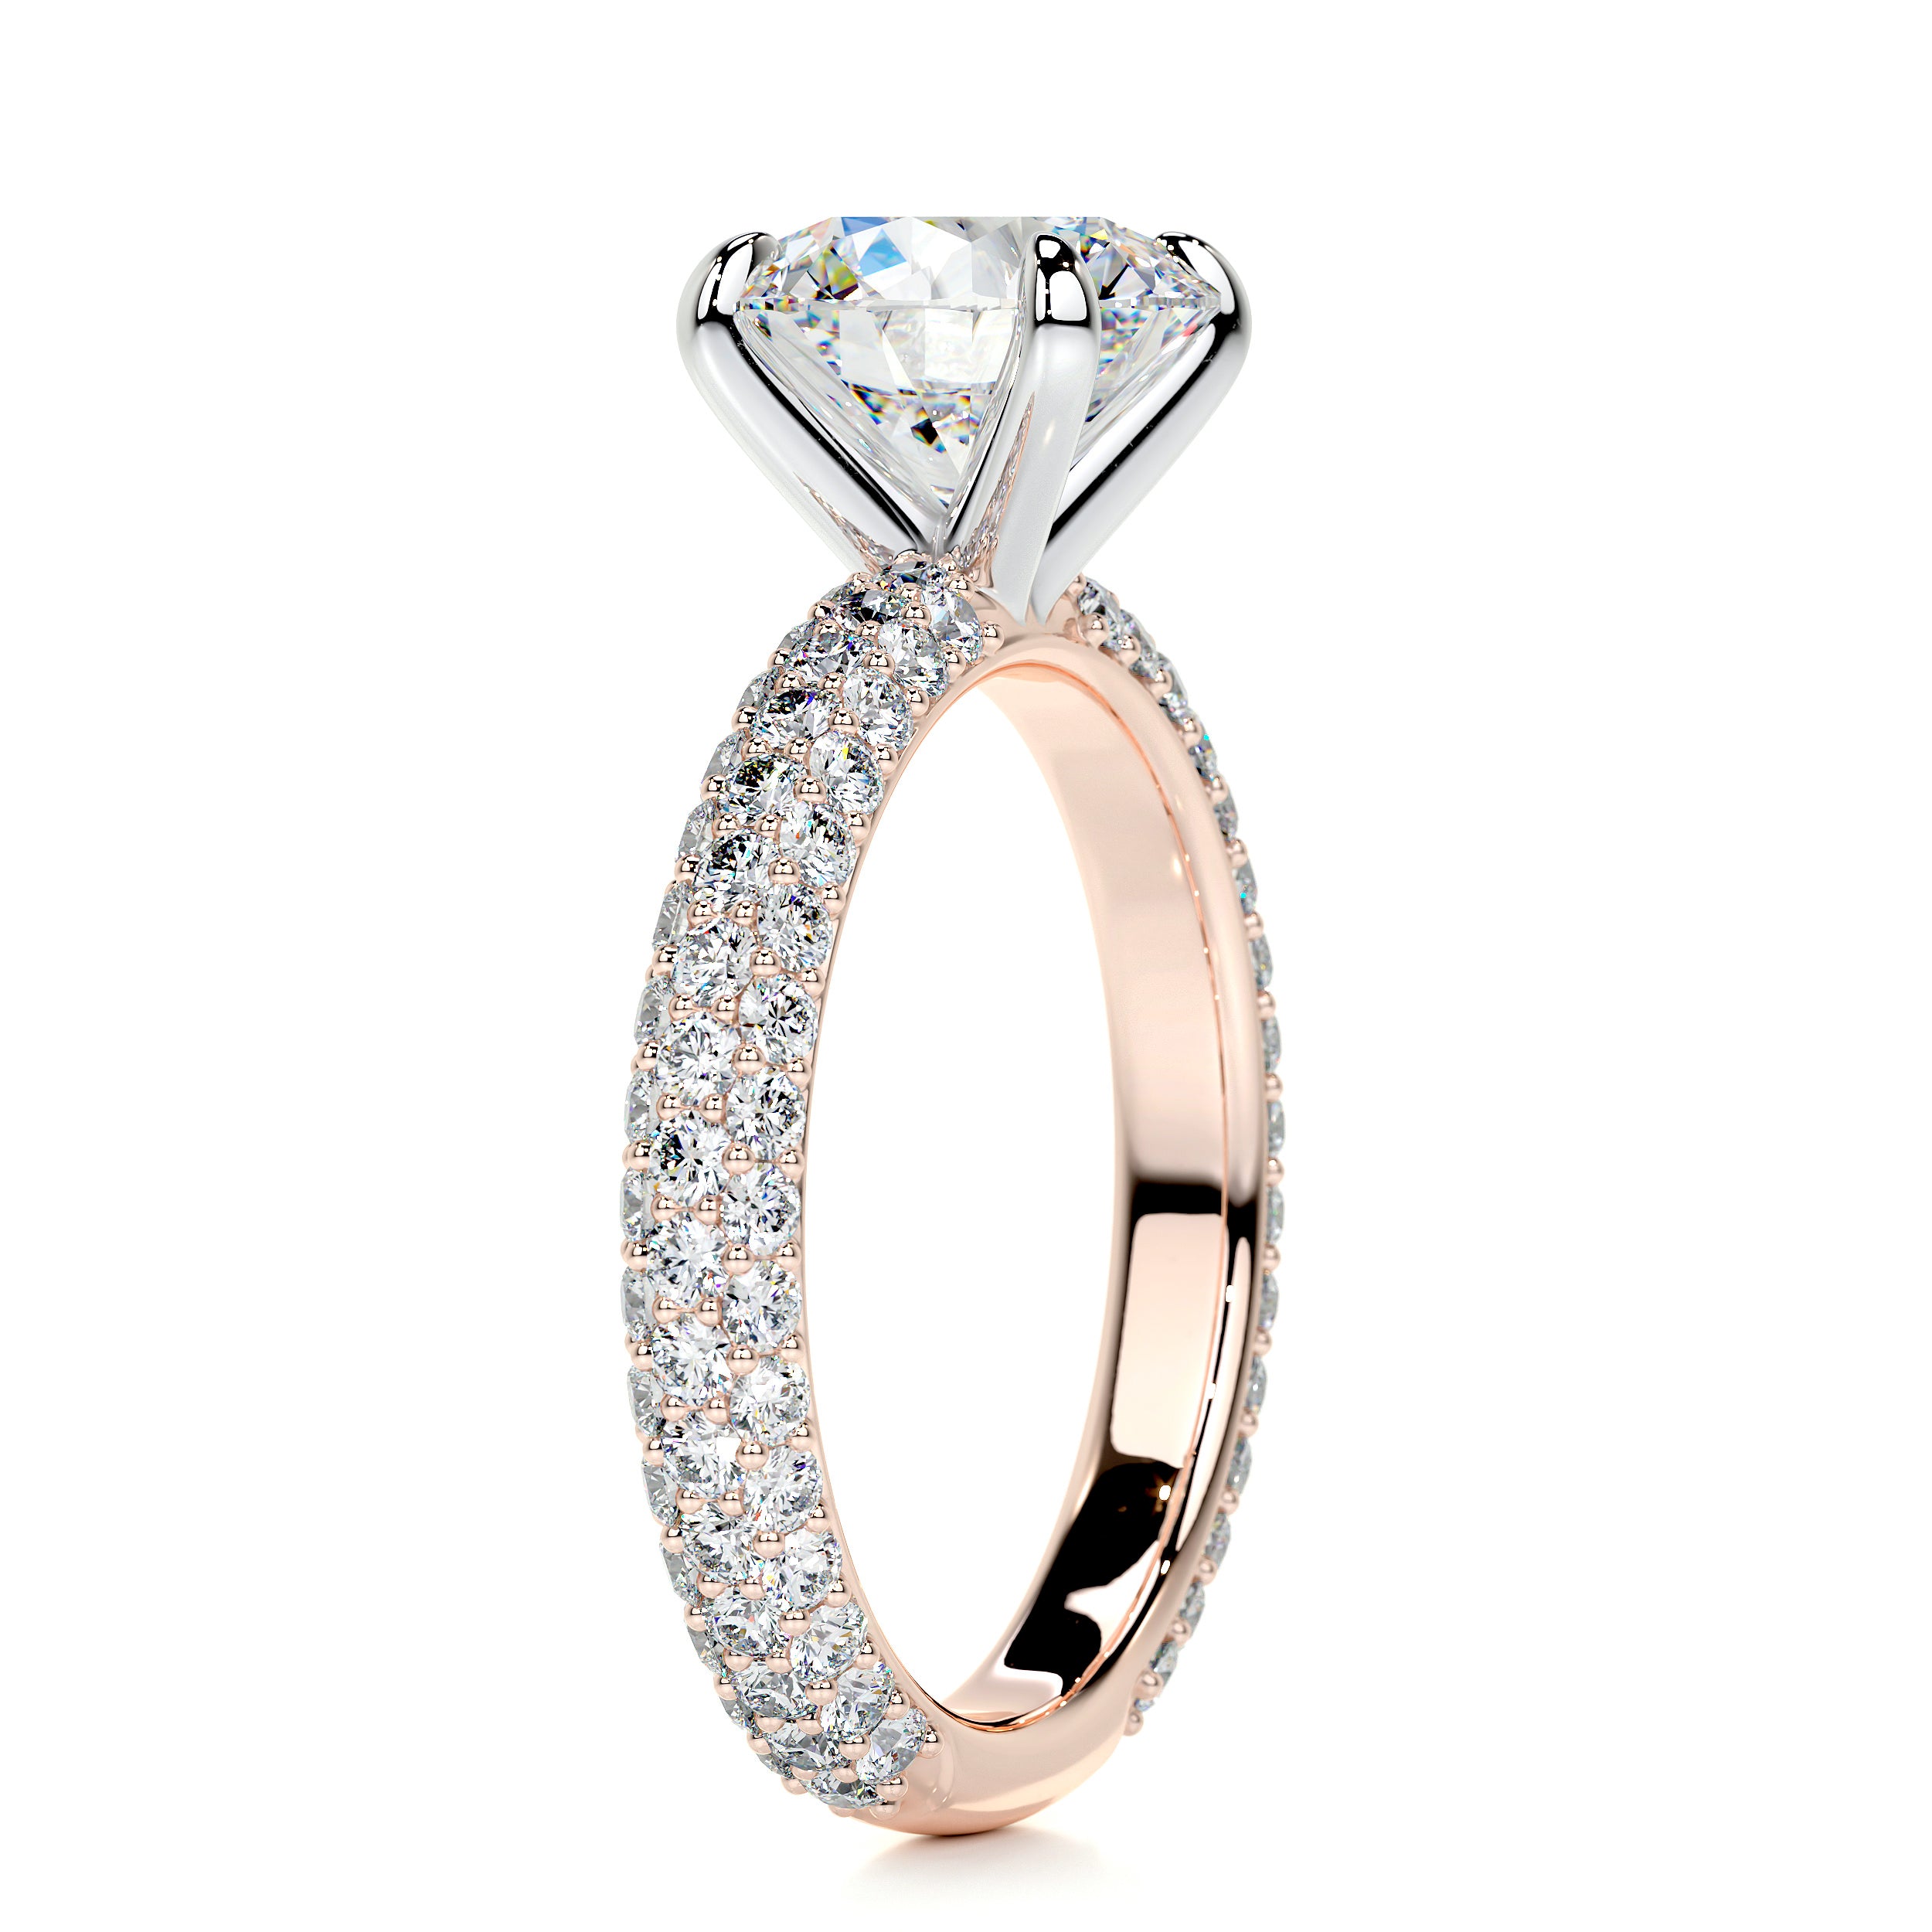 Charlotte Moissanite & Diamonds Ring   (3 Carat) -14K Rose Gold